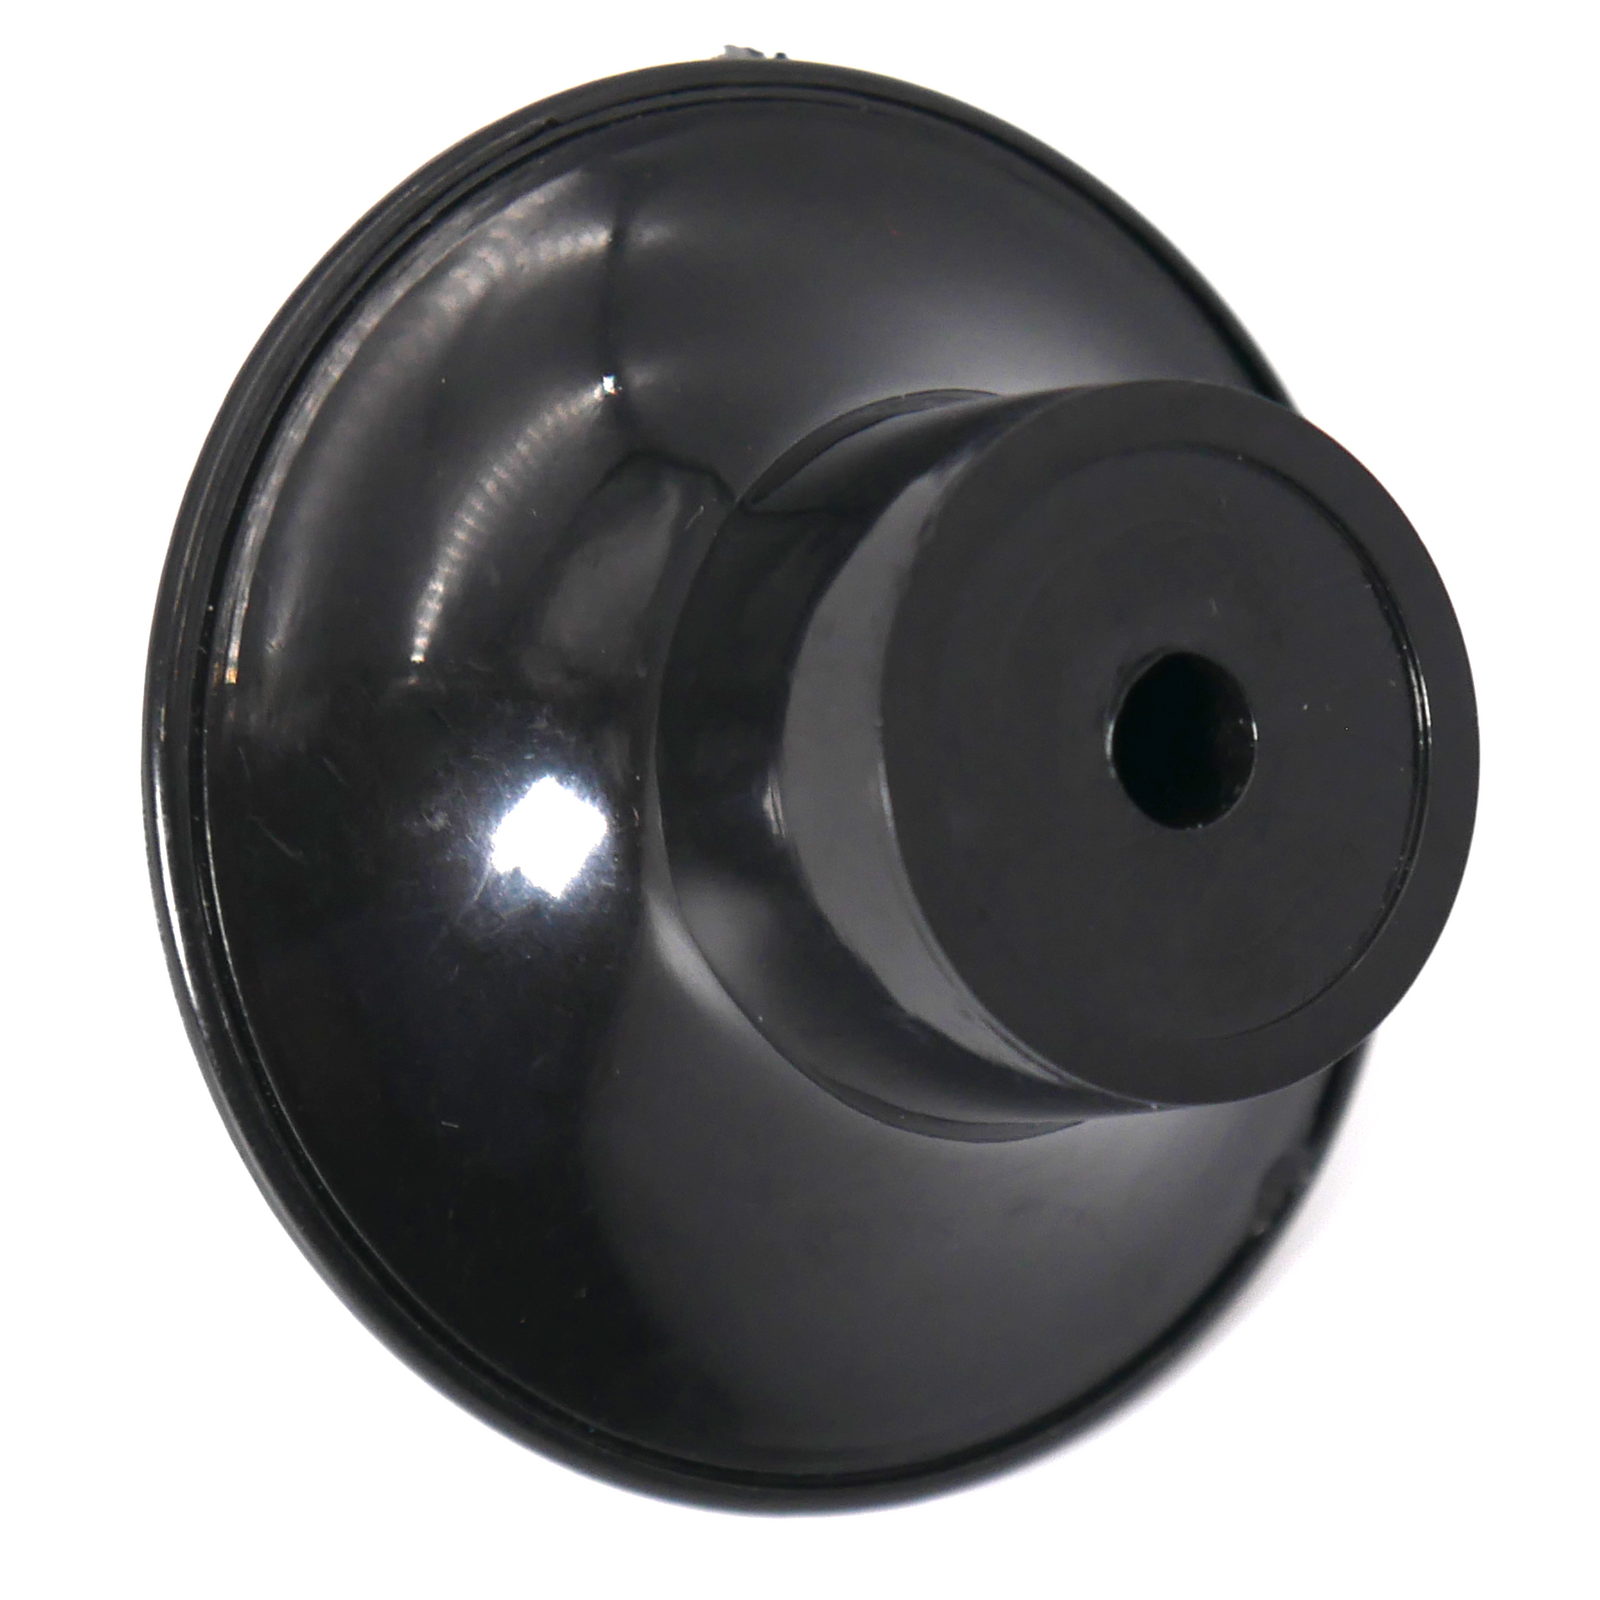 Black handle knob used for manual impulse sealers